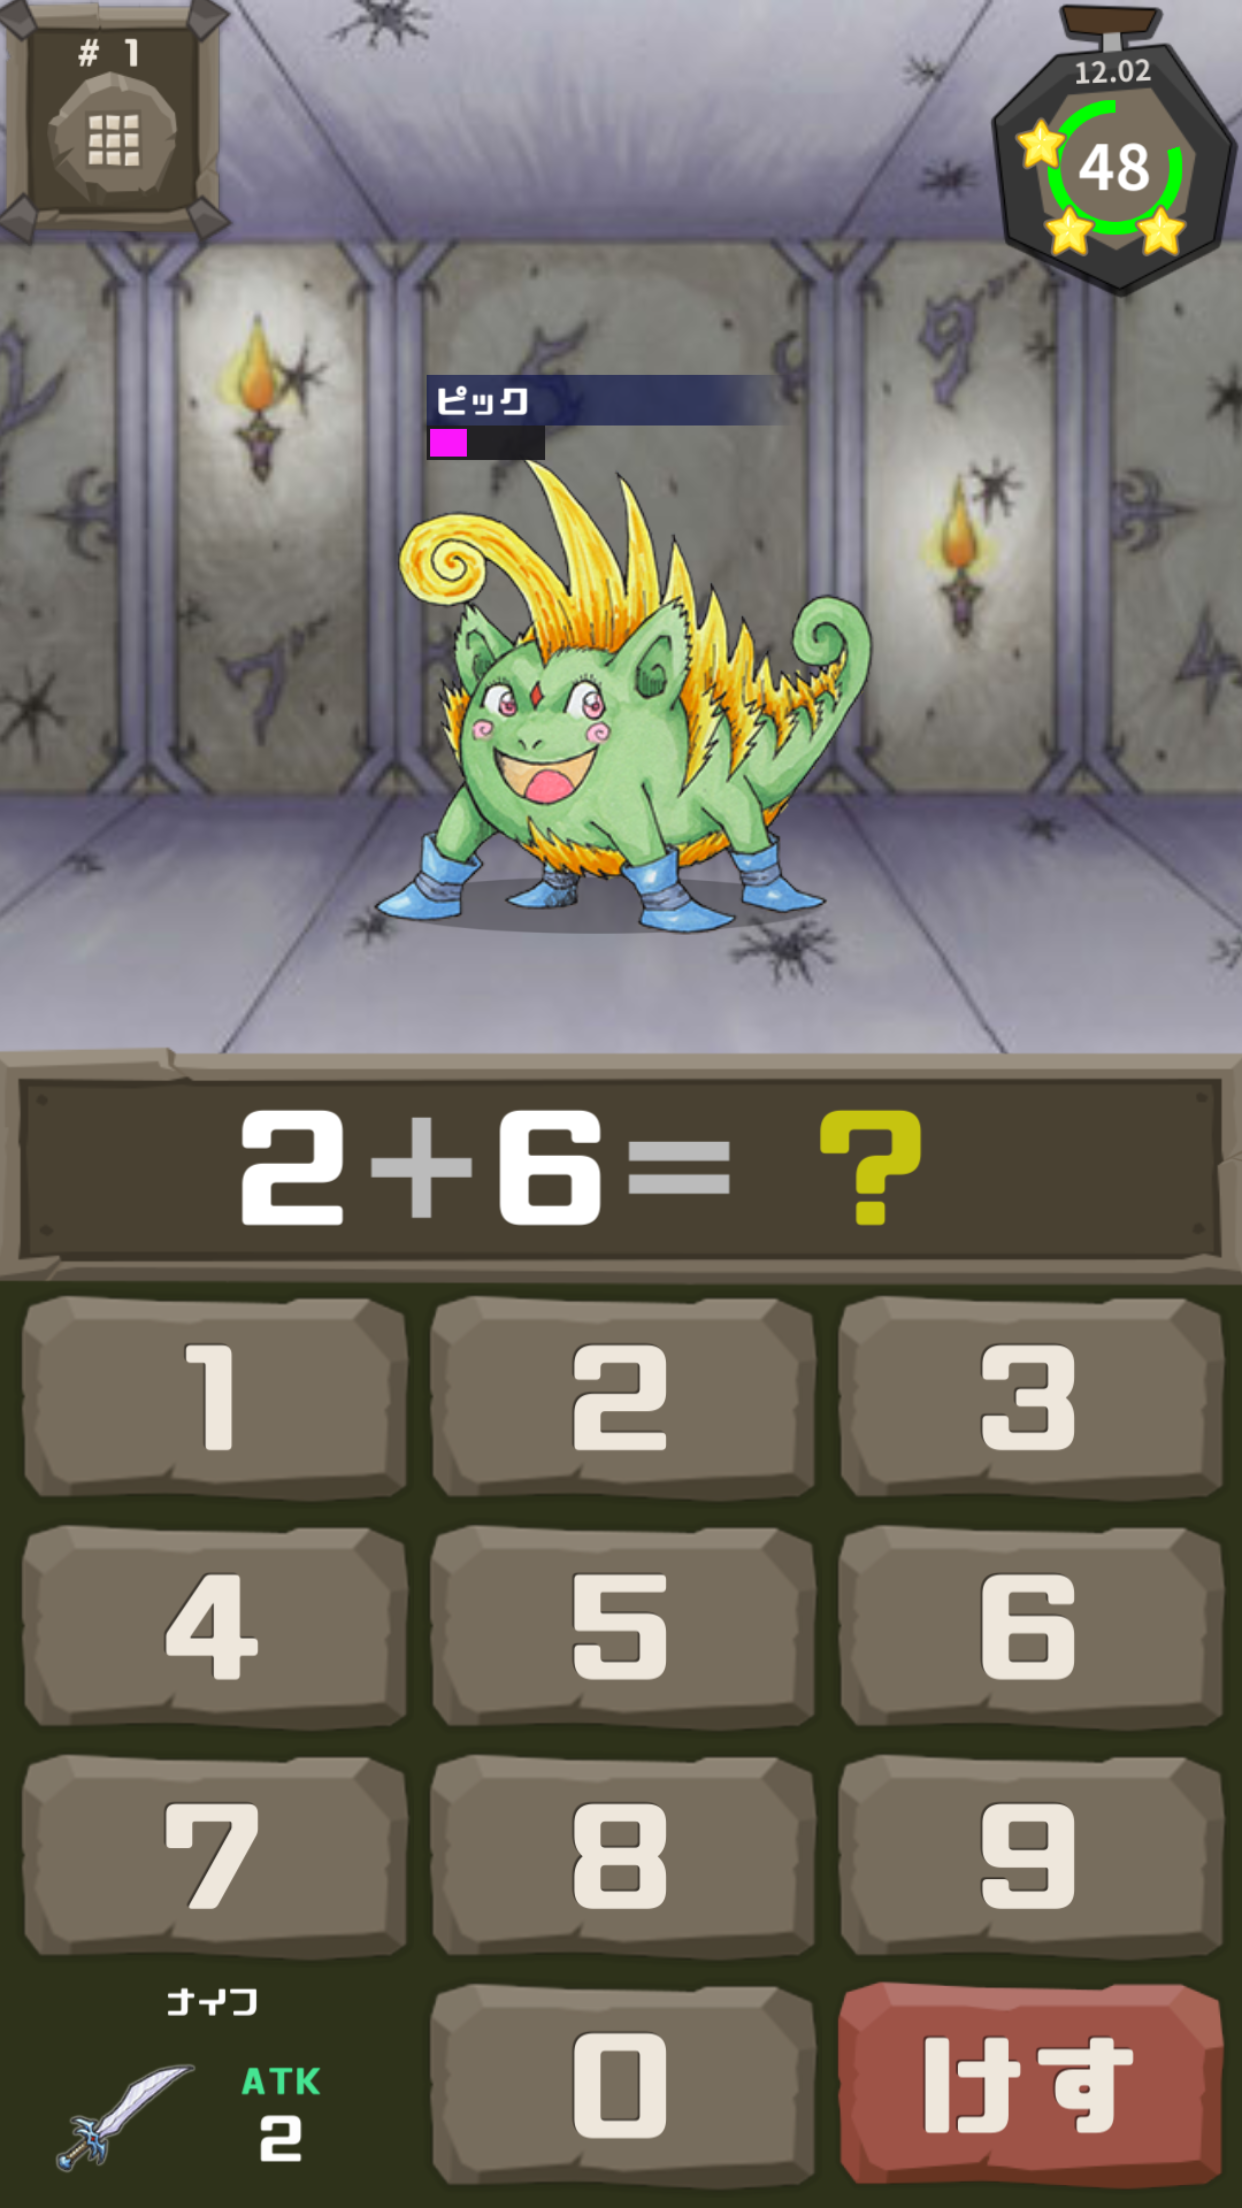 Screenshot 1 of ការបណ្តុះបណ្តាលខួរក្បាលគណនាសមរភូមិ Monster Tower 1.0.1